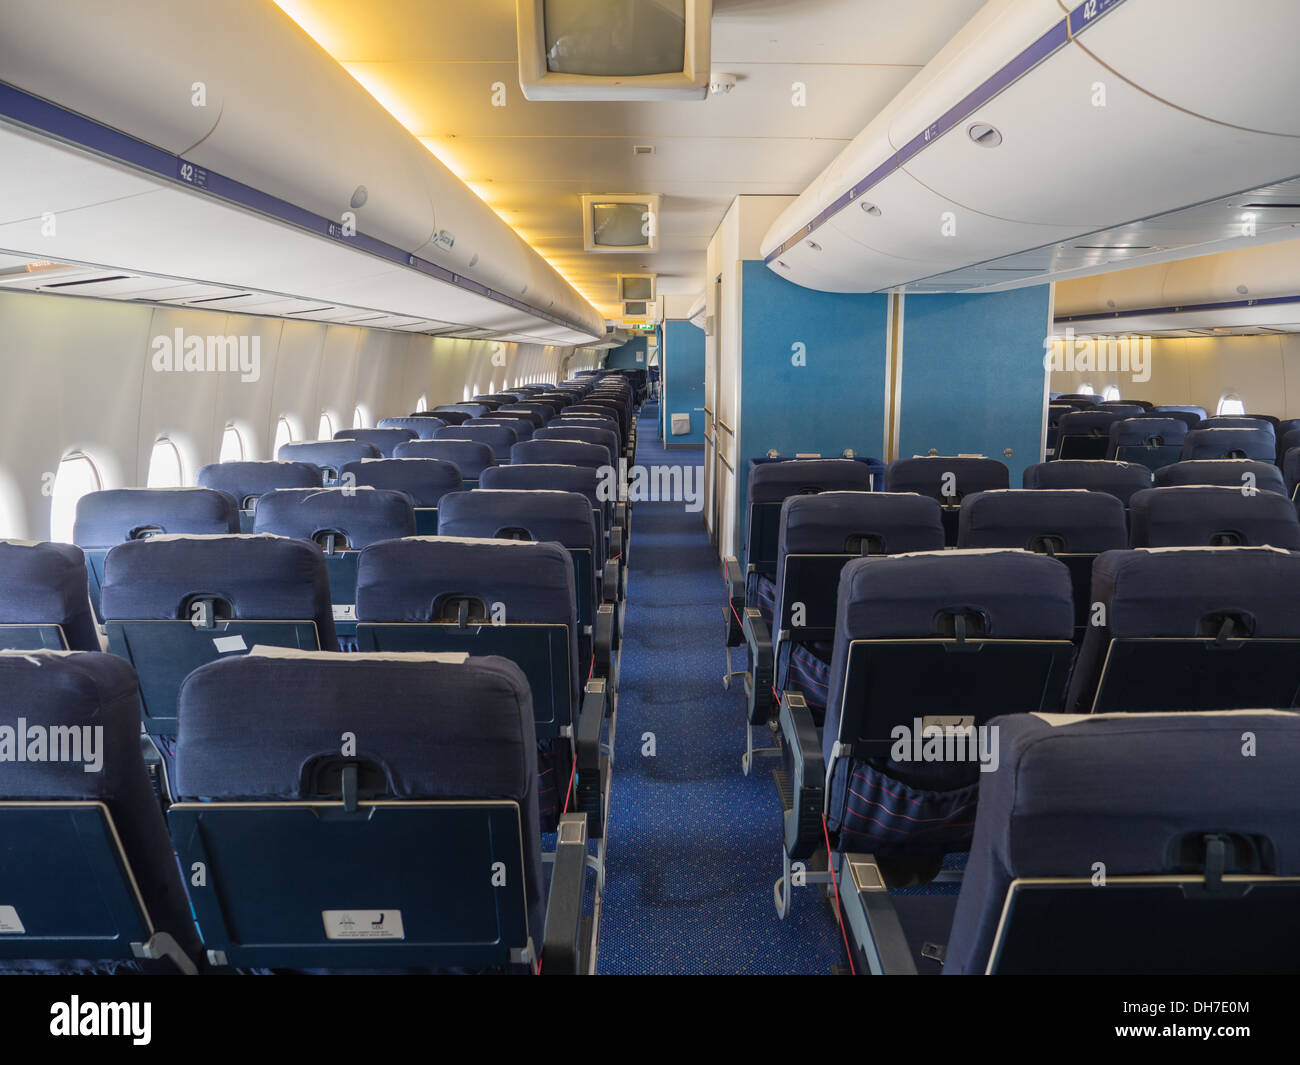 Inside the passenger cabin of a jumbo jet airliner Stock Photo